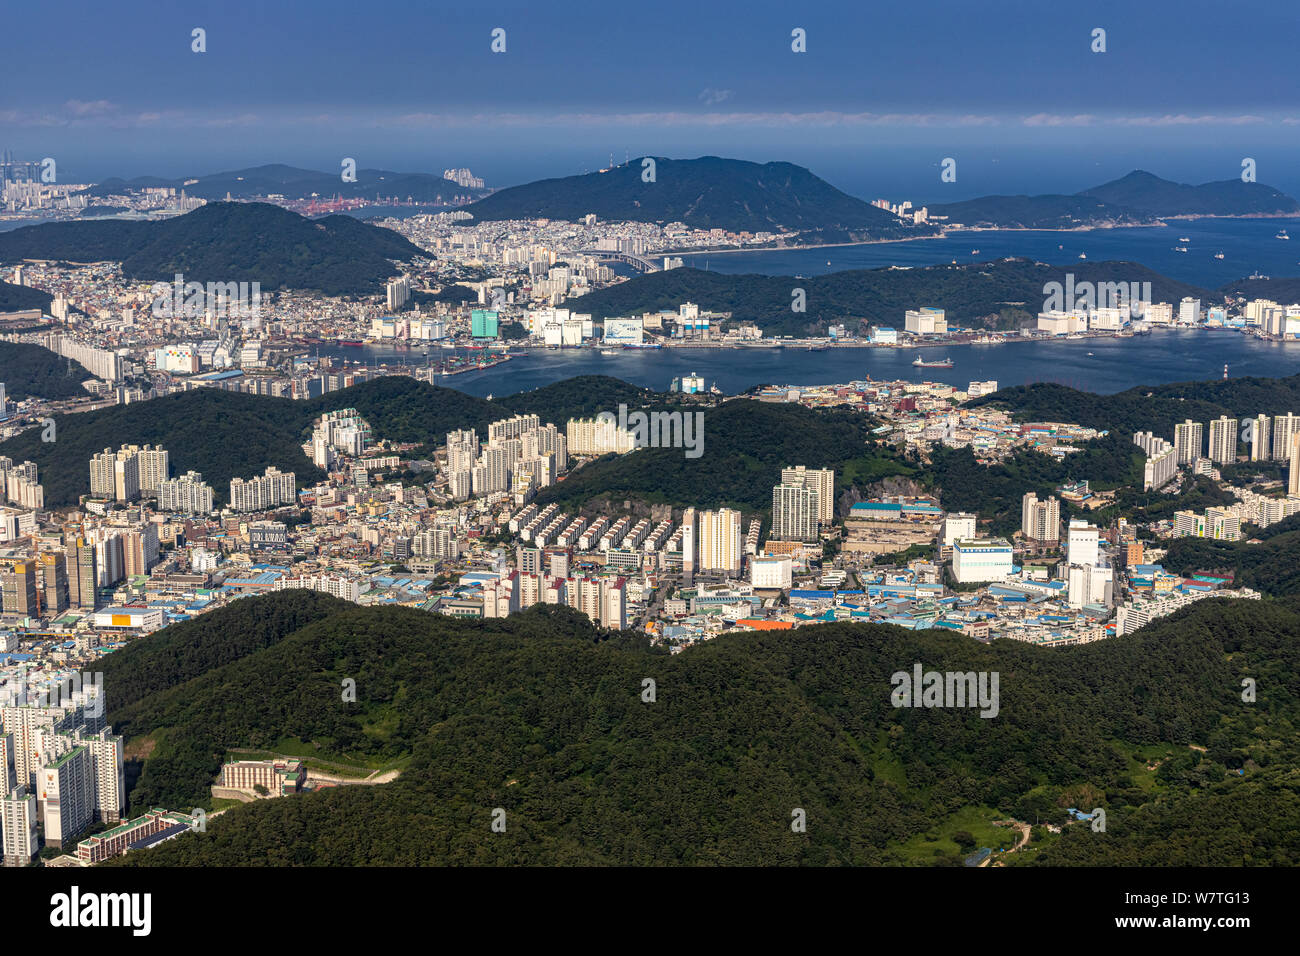 Busan, Korea - June 22, 2019: Aerial view of Busan Metropolitan City Stock Photo